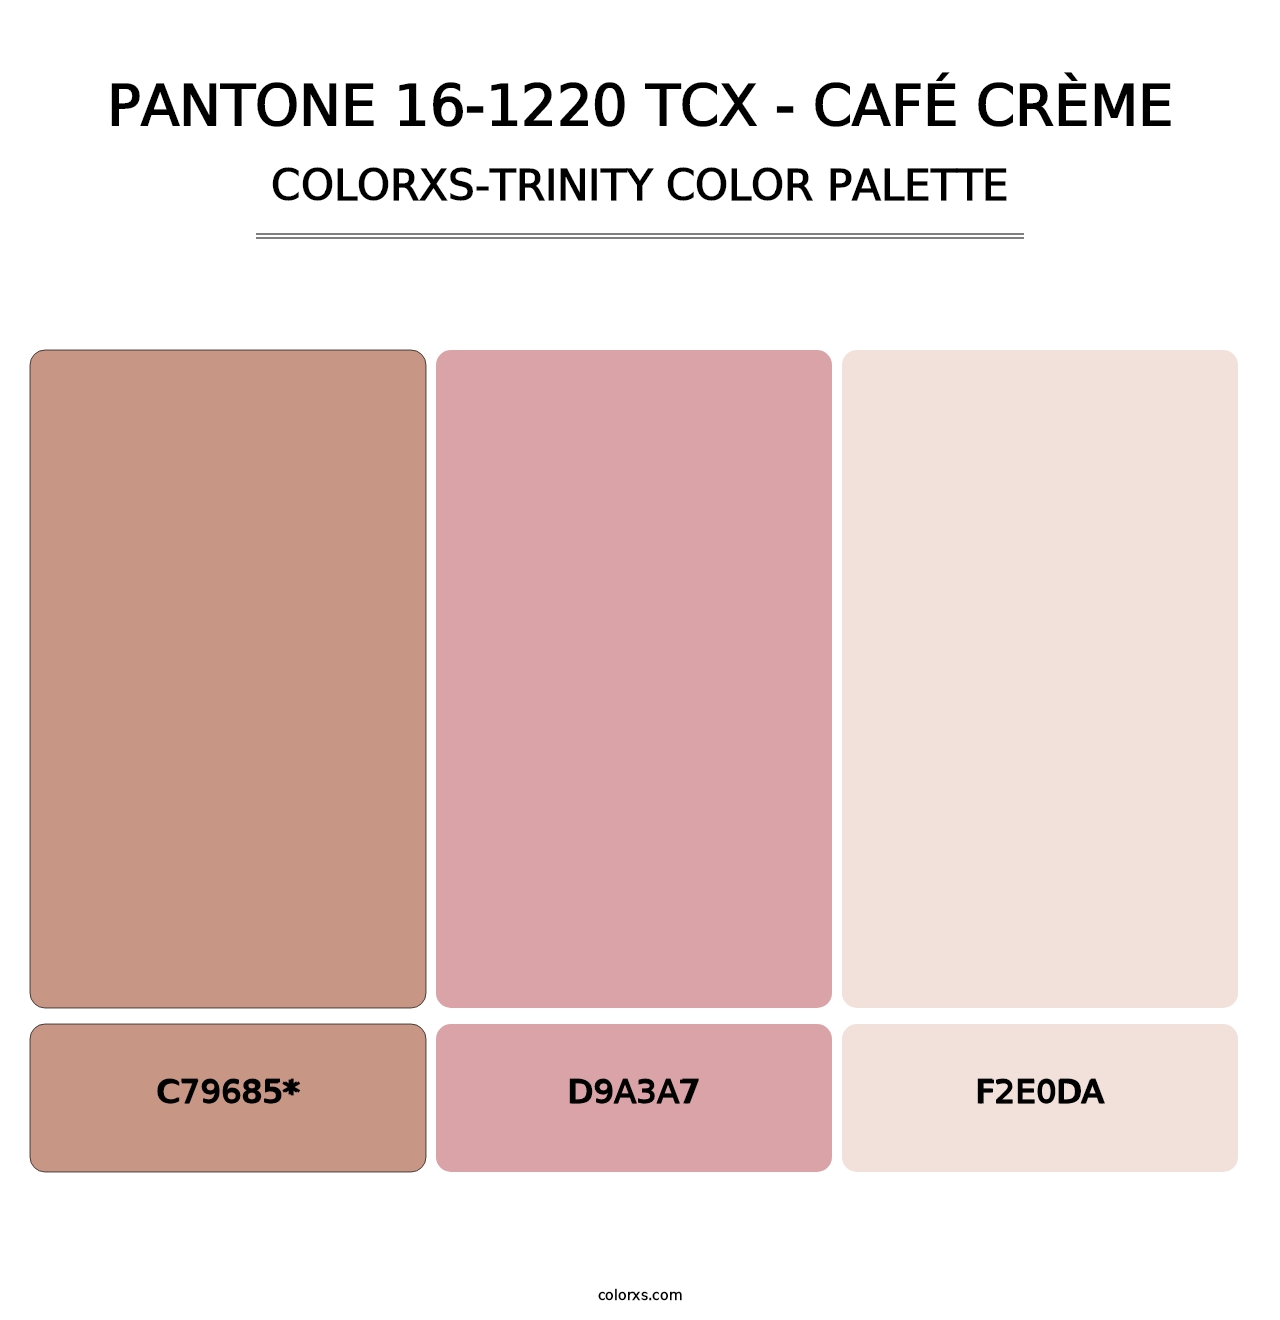 PANTONE 16-1220 TCX - Café Crème - Colorxs Trinity Palette